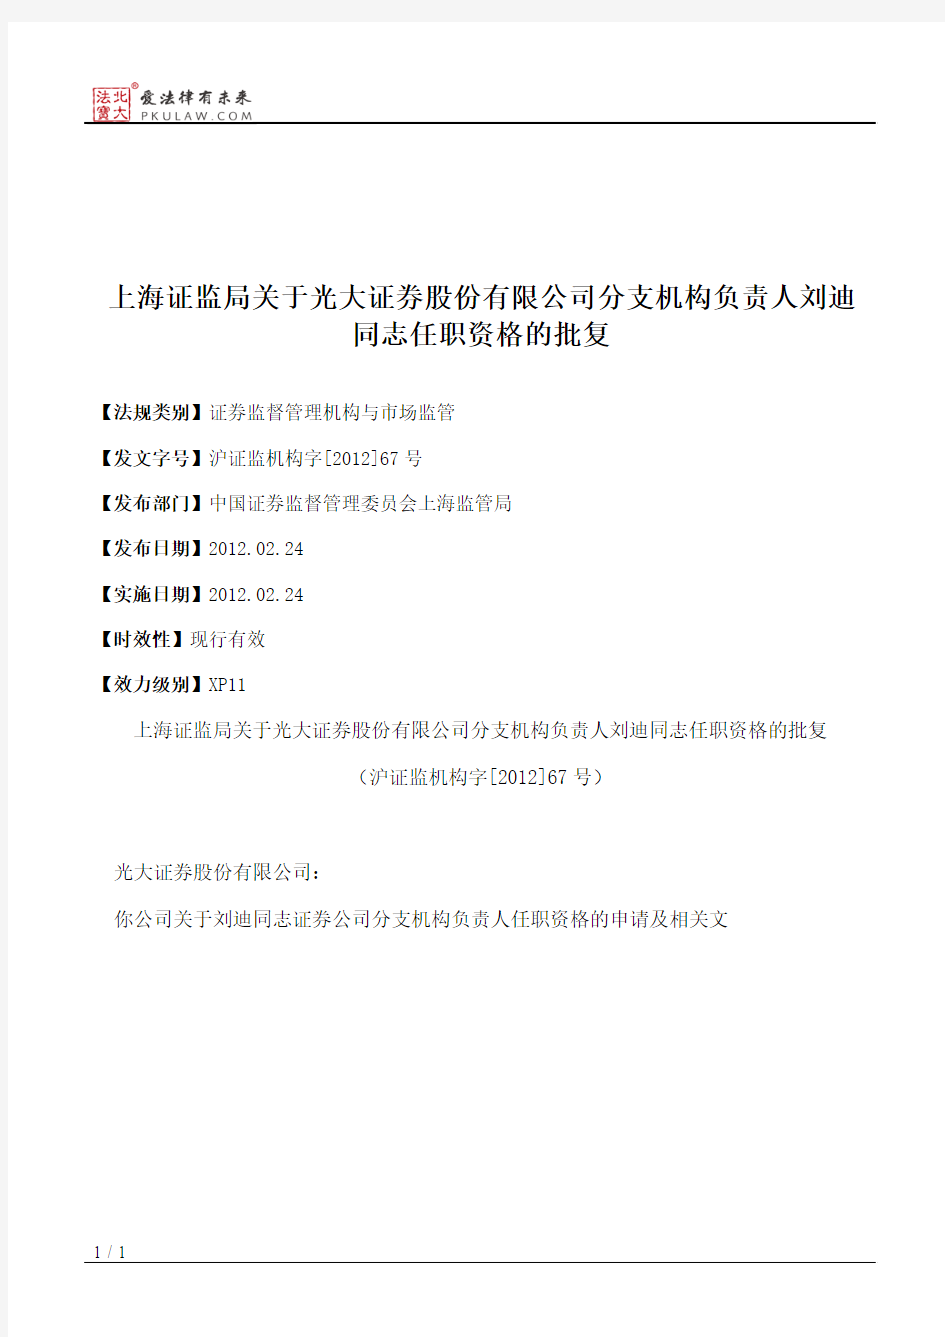 上海证监局关于光大证券股份有限公司分支机构负责人刘迪同志任职